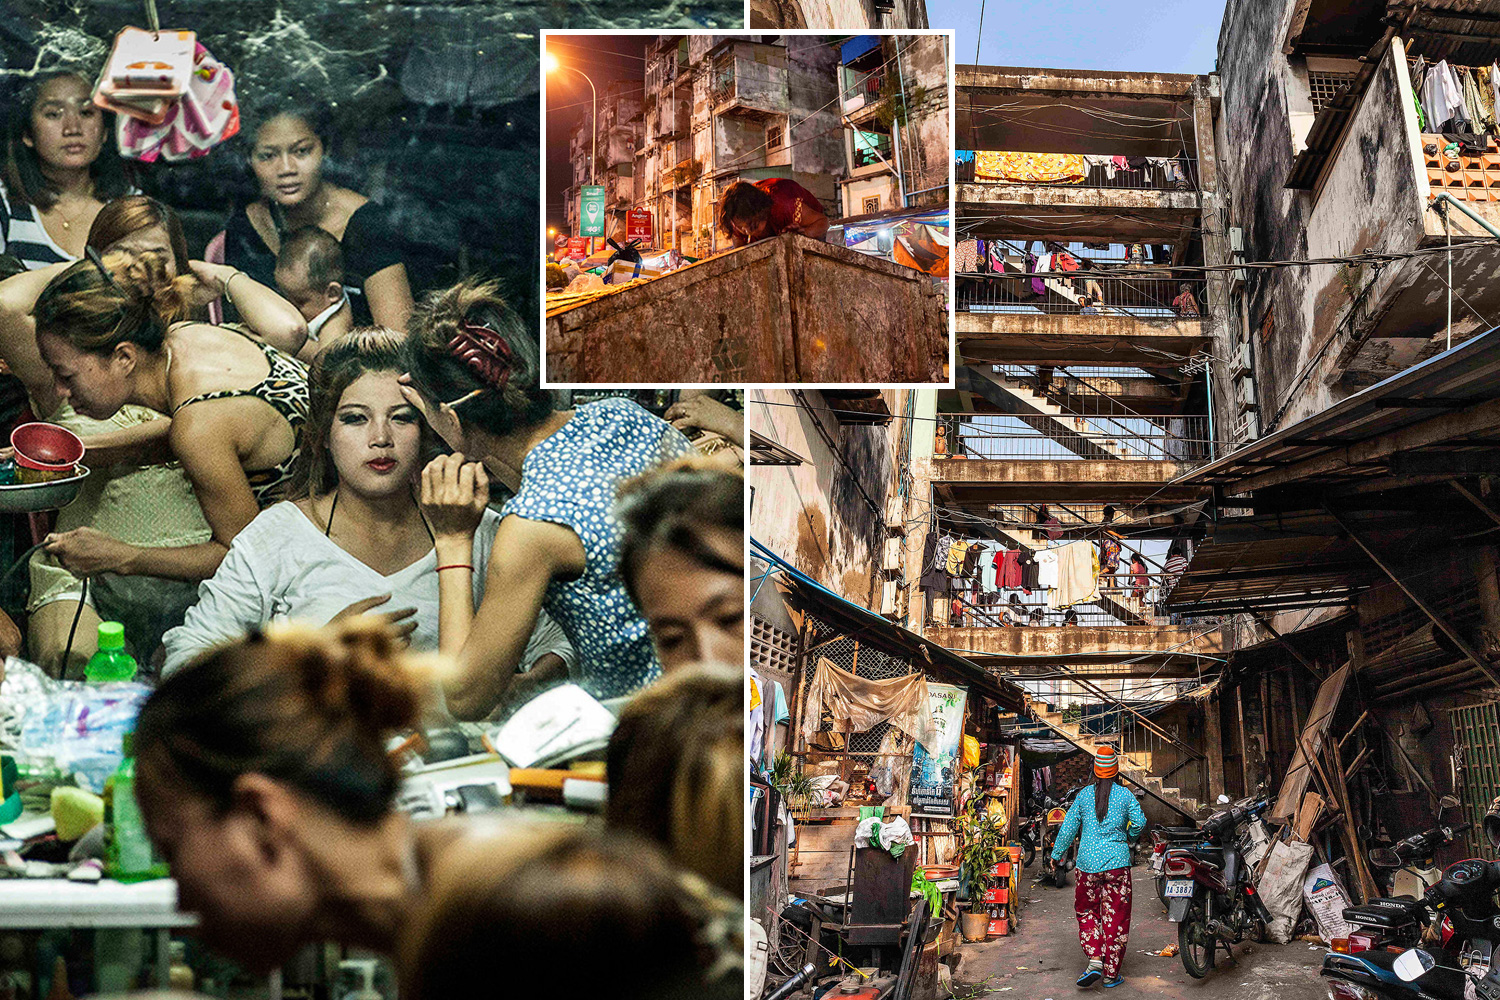 Impactantes imágenes revelan el interior de tugurio en Camboya lleno de prostitutas y adictos a las drogas